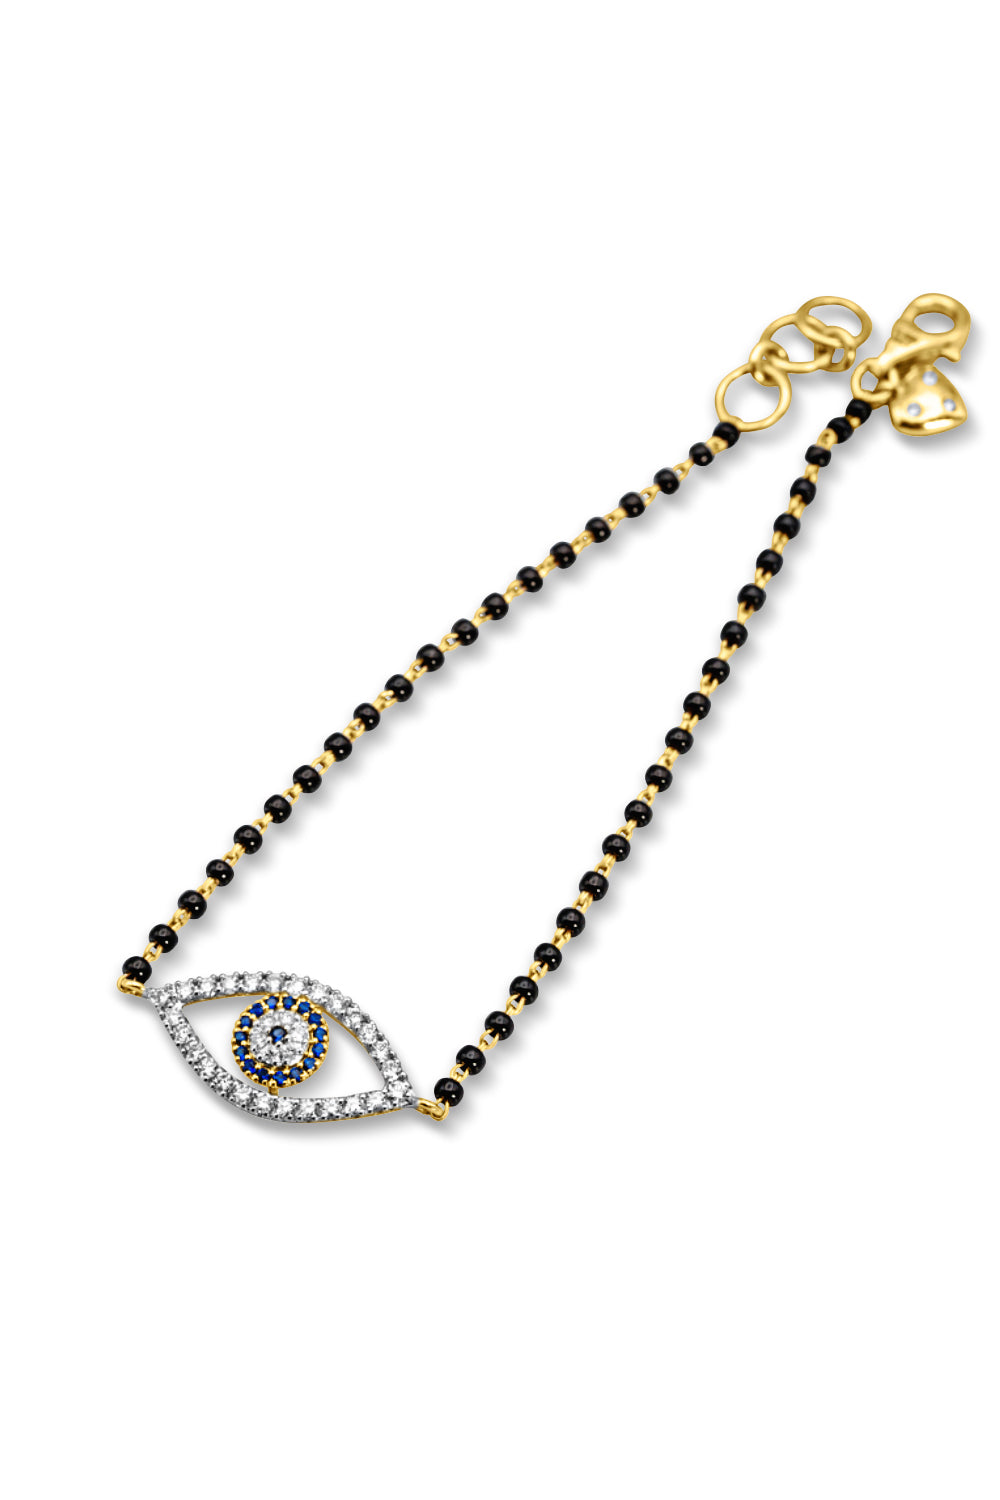 Buy womens diamond bracelet in 14k & 18k gold – Radiant Bay